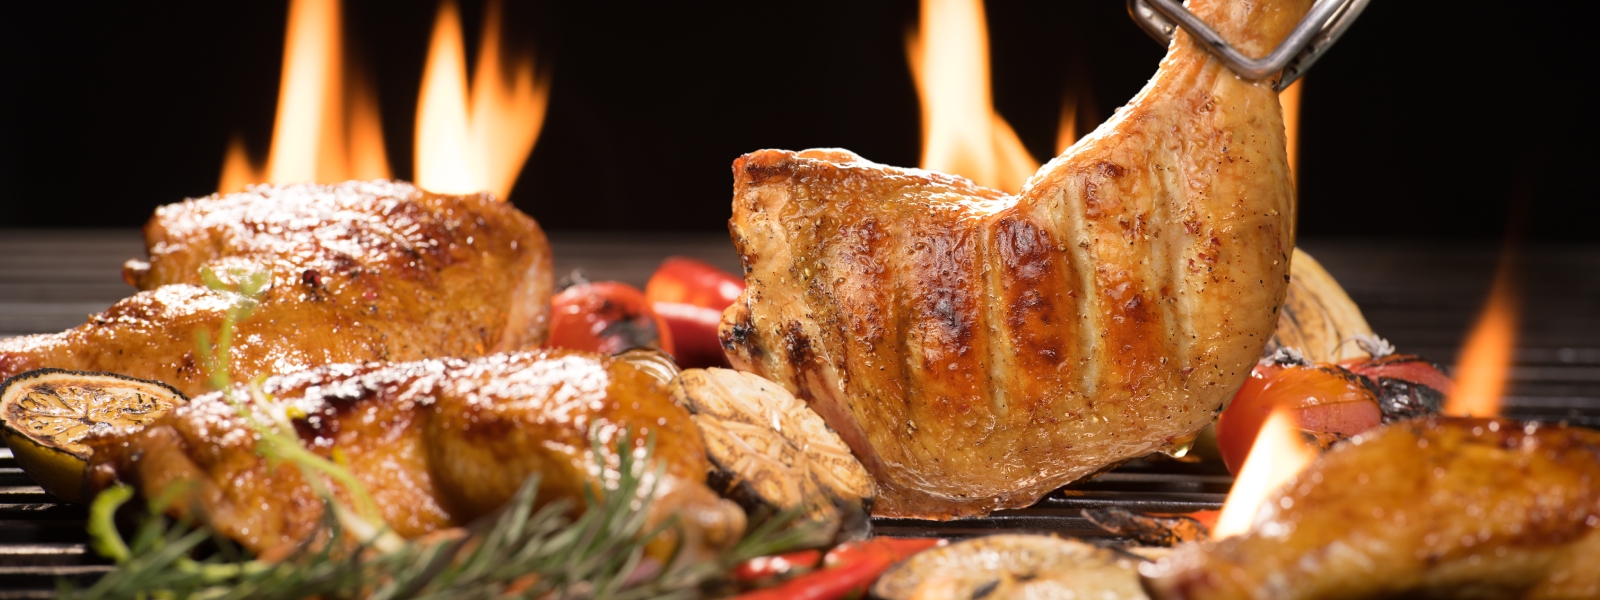 Maeme's Piri Piri - Aldershot grilled chicken